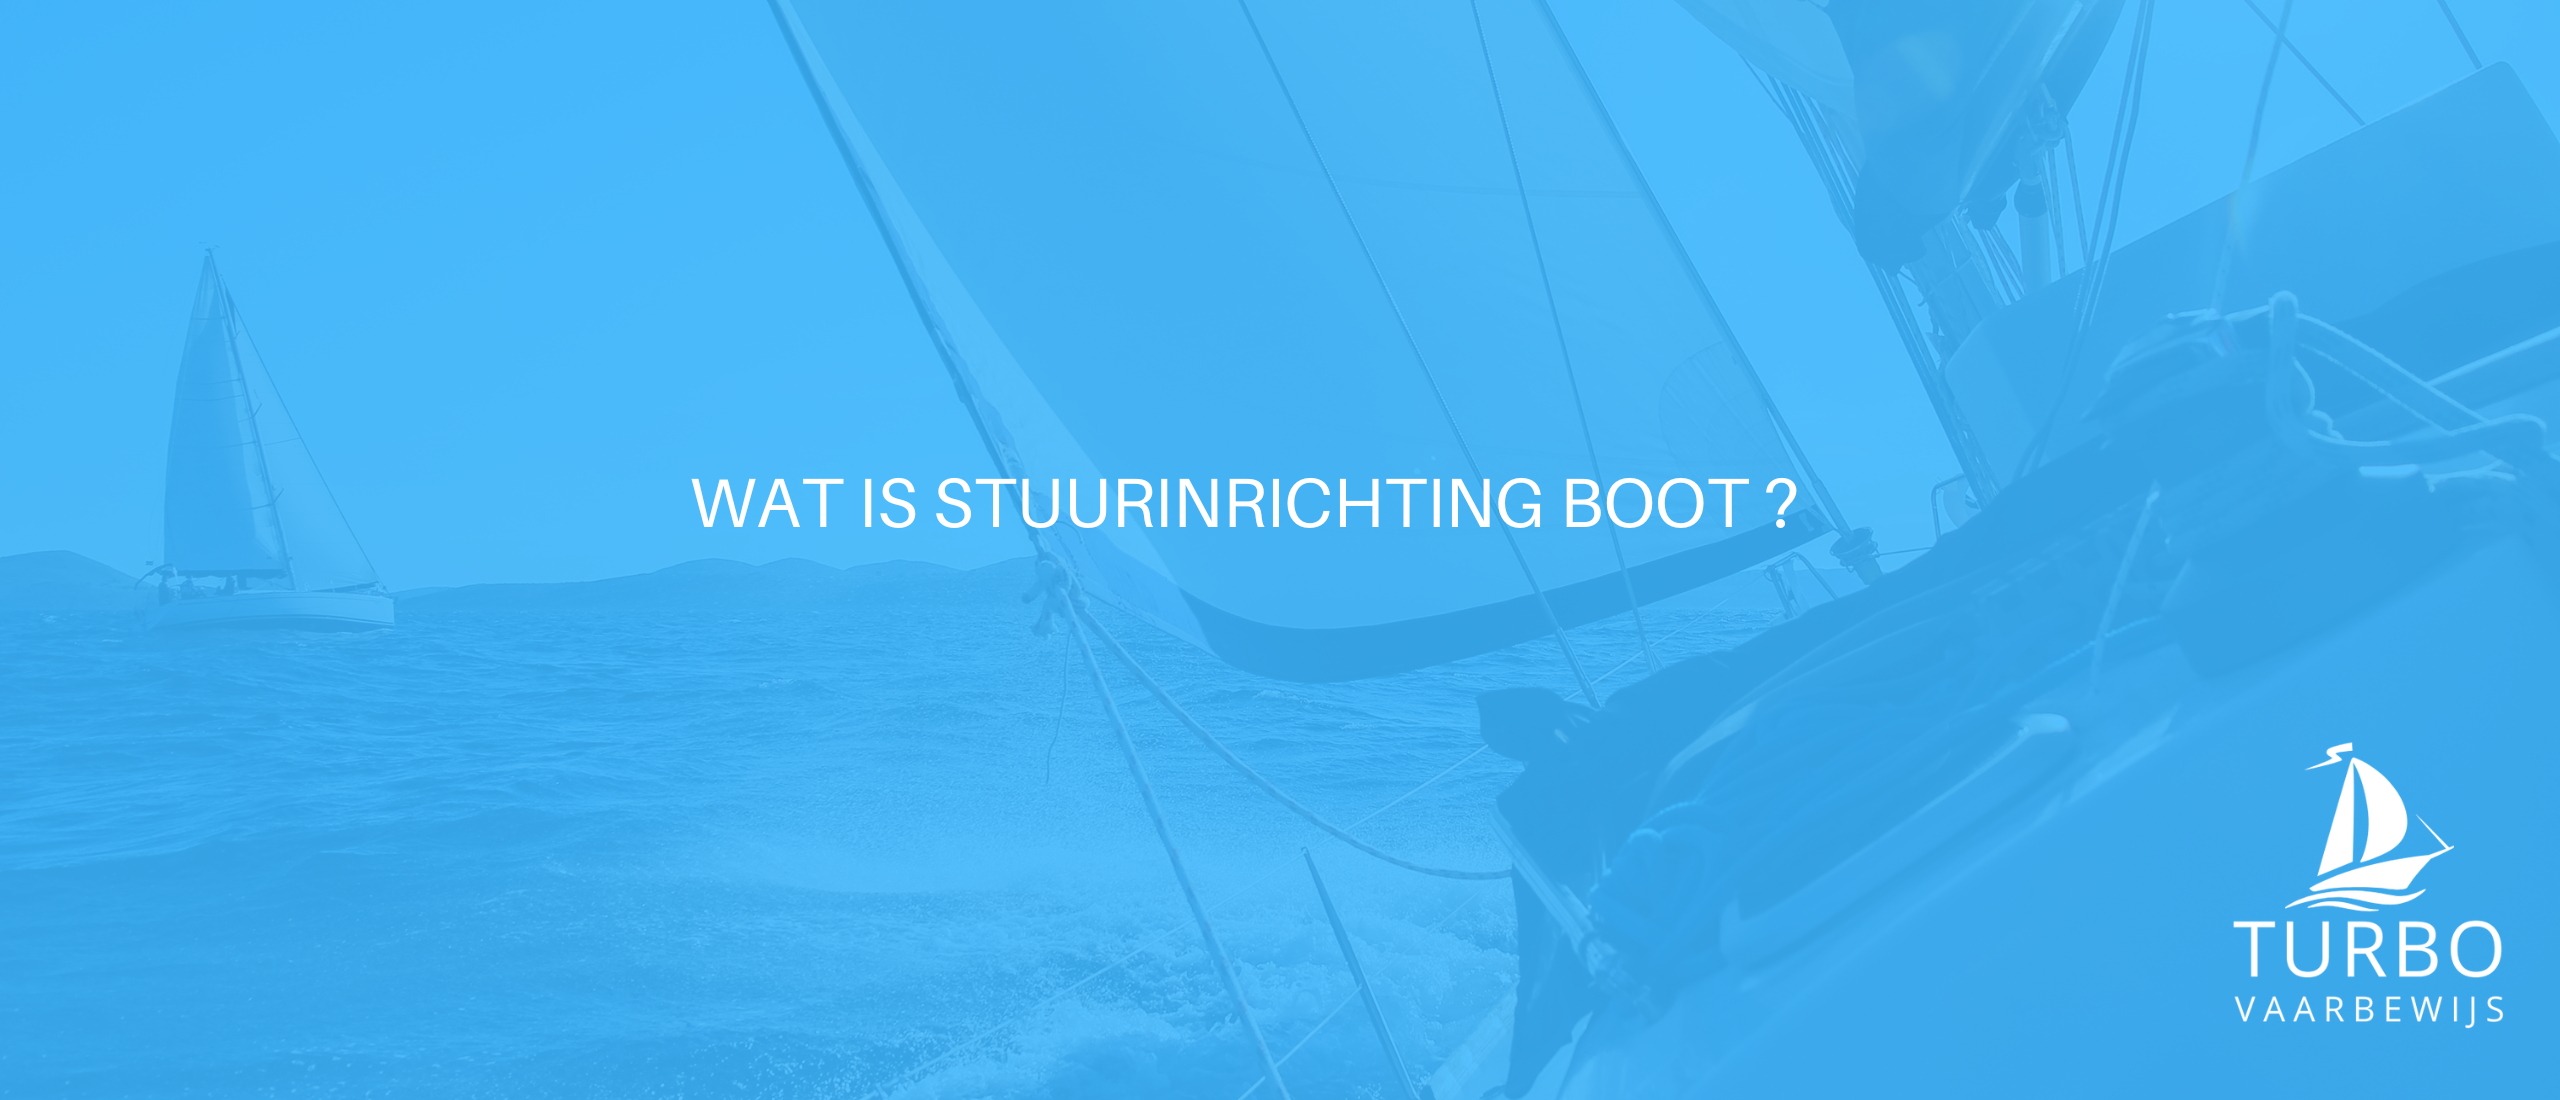 Wat is stuurinrichting boot?